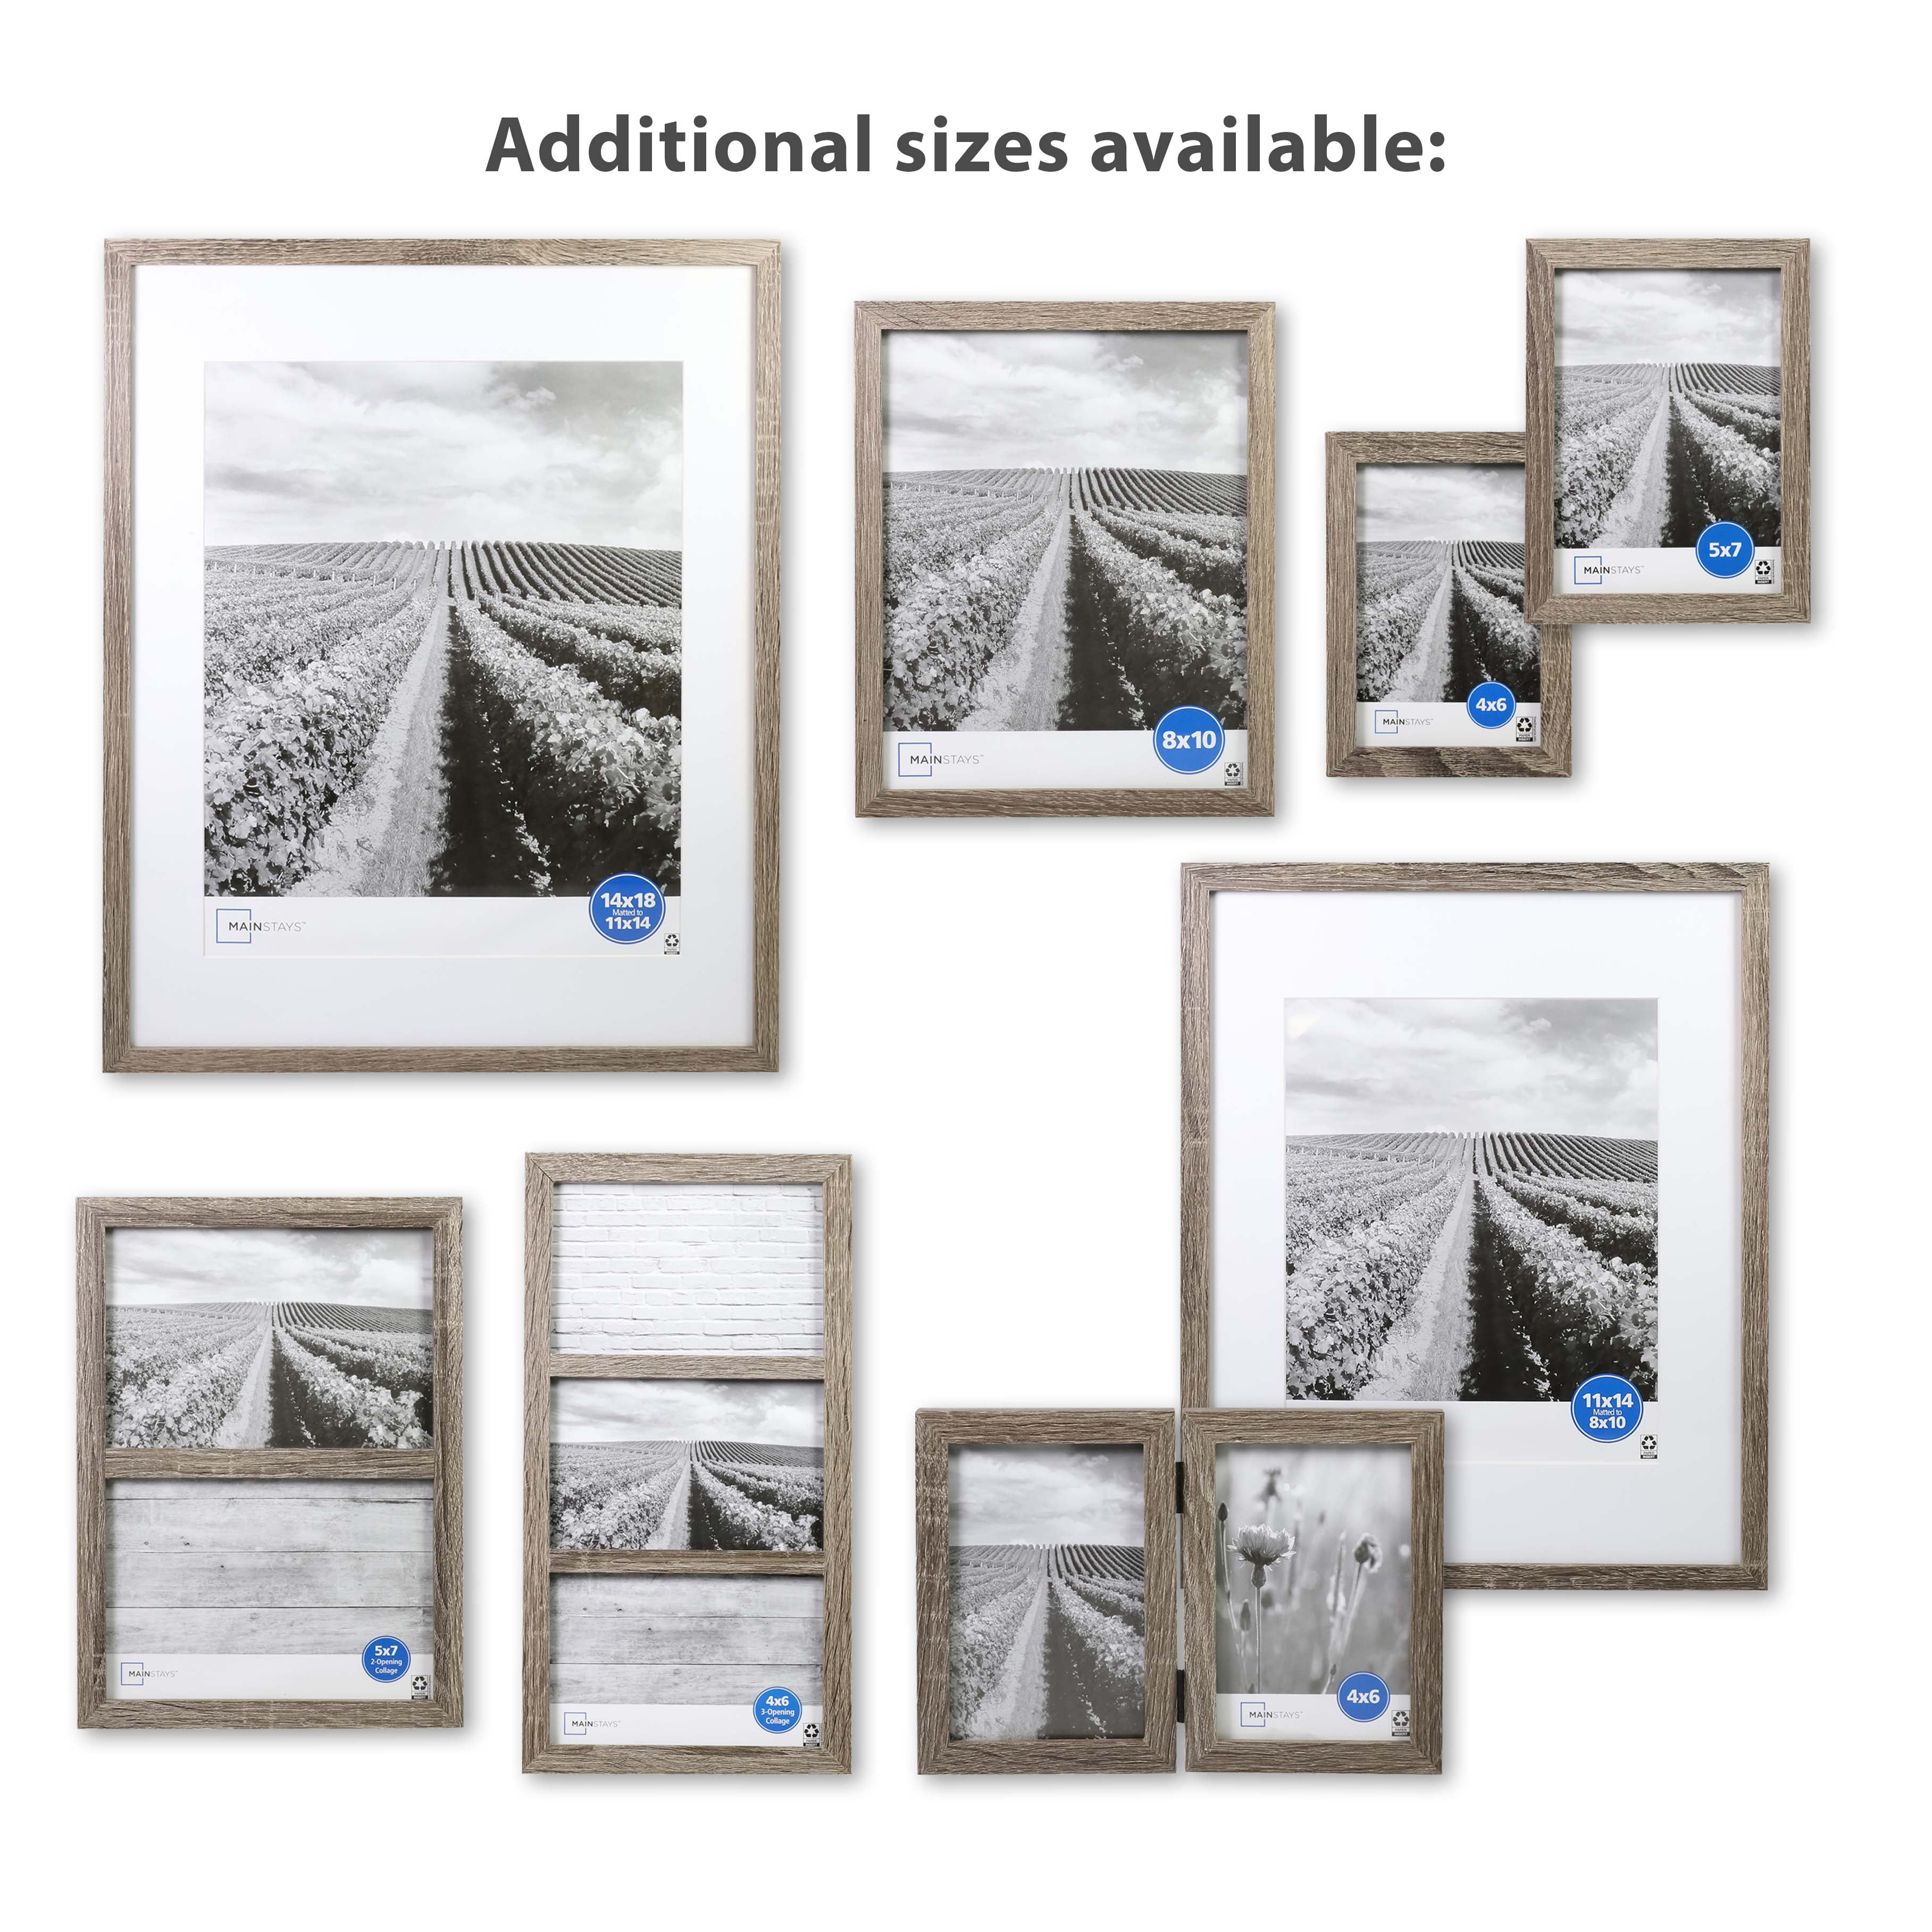 5 x 7 picture frames  Online framing service – Frameology